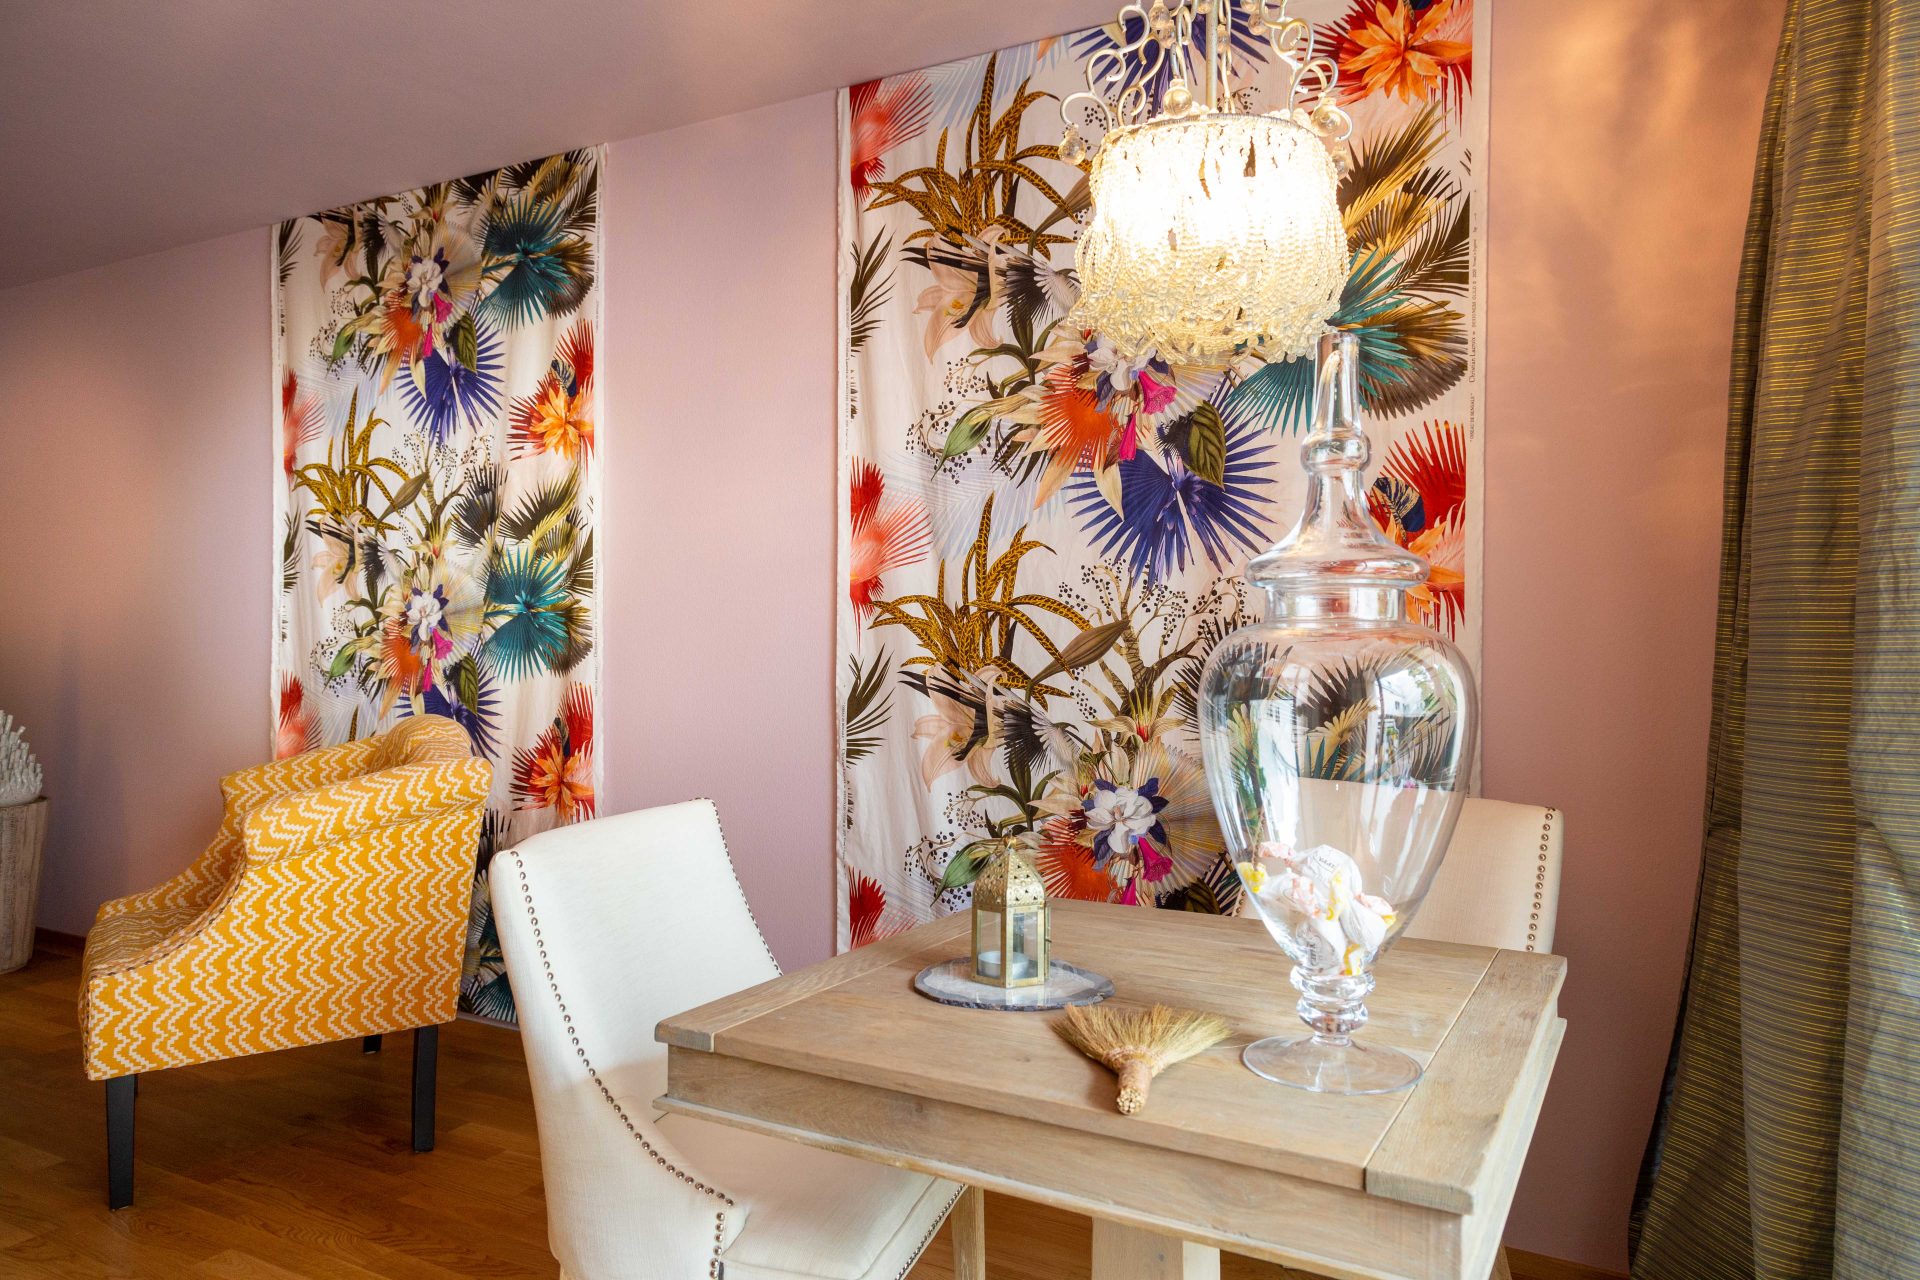 Kleiner Holztisch vor Lacroix-Wandbehang mit verschiedenen blühenden Blumen und Pflanzen.